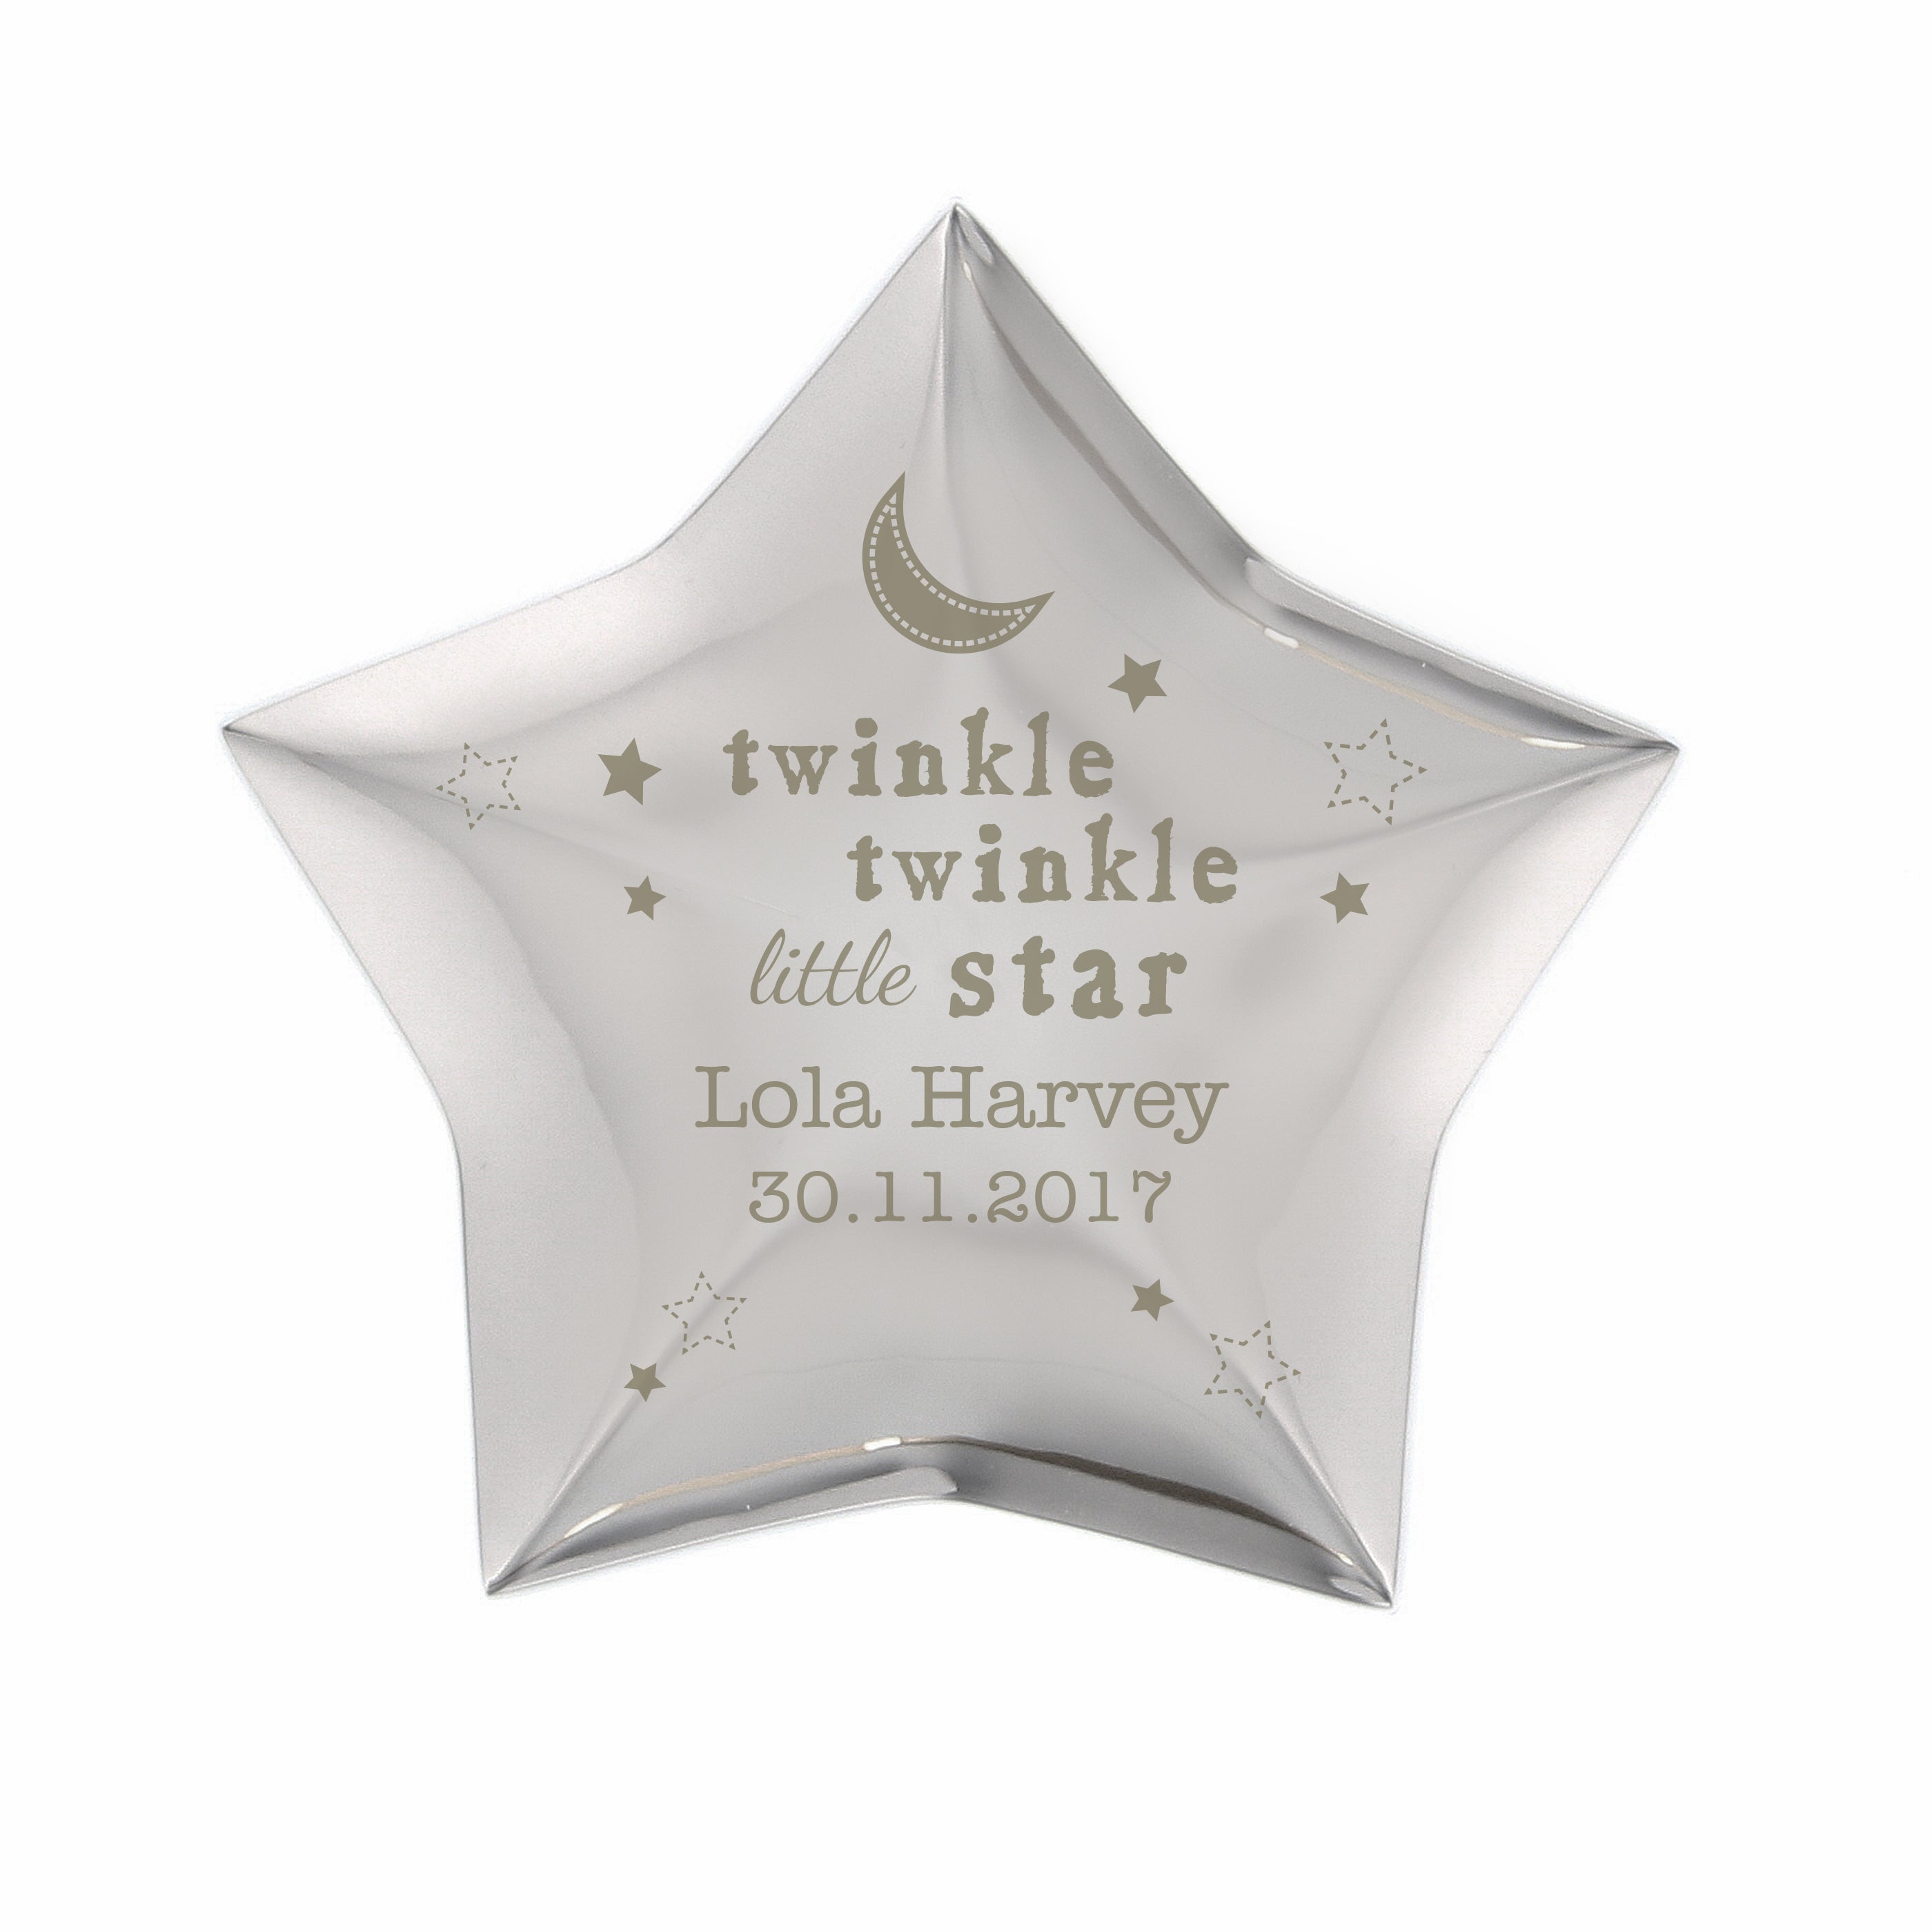 Personalised Twinkle Twinkle Star Keepsake Box